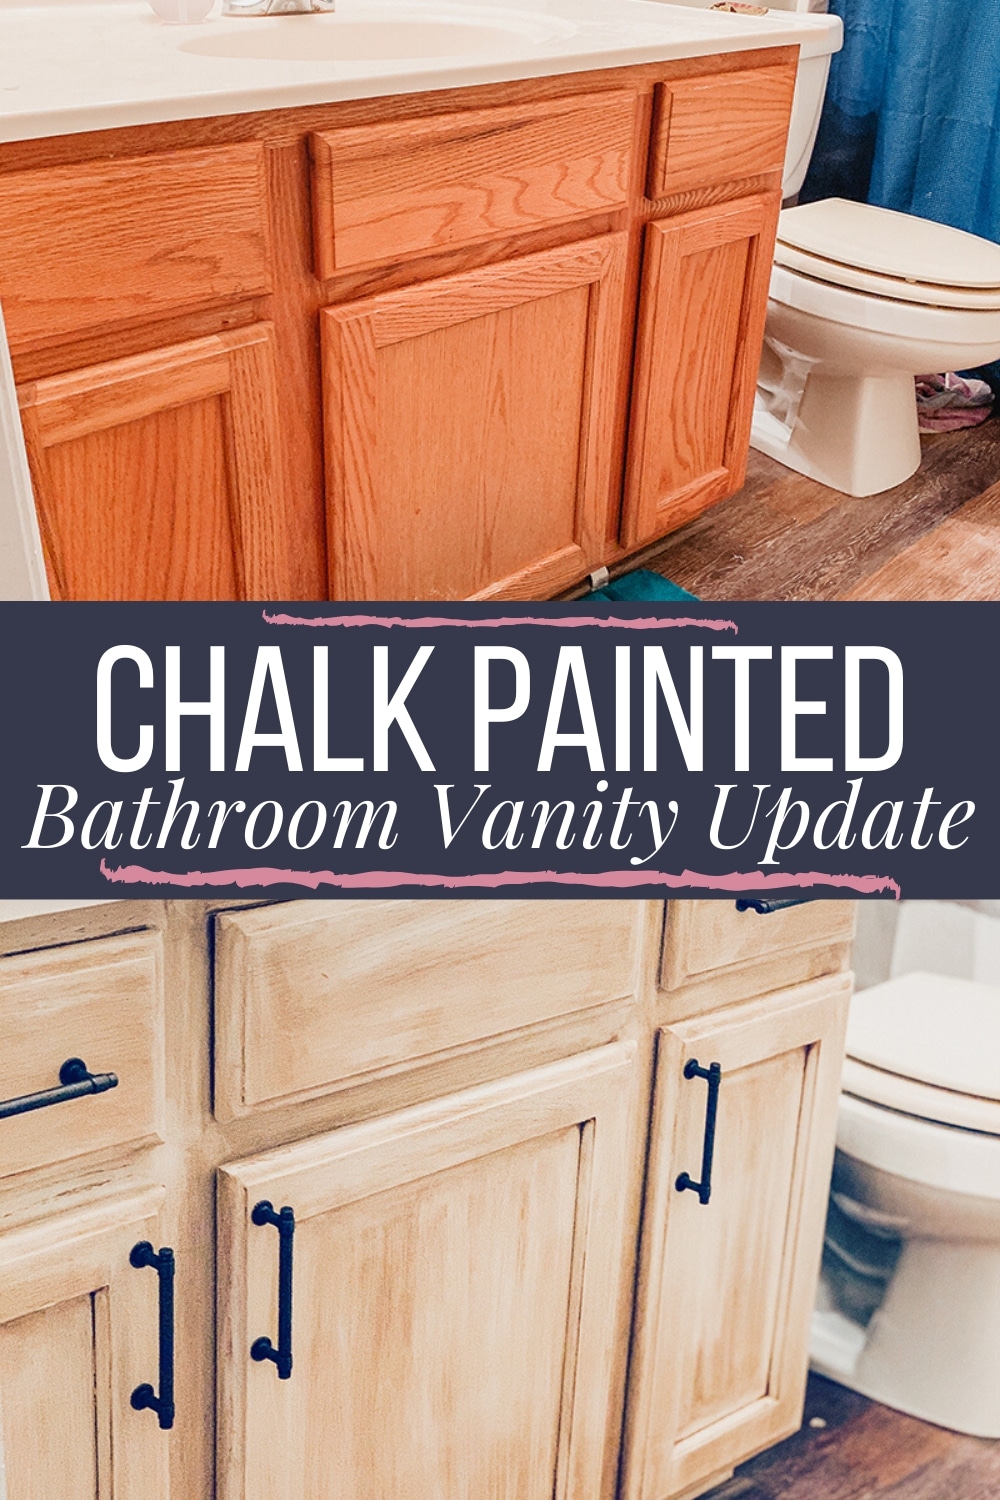 Chalk painted bathroom vanity update